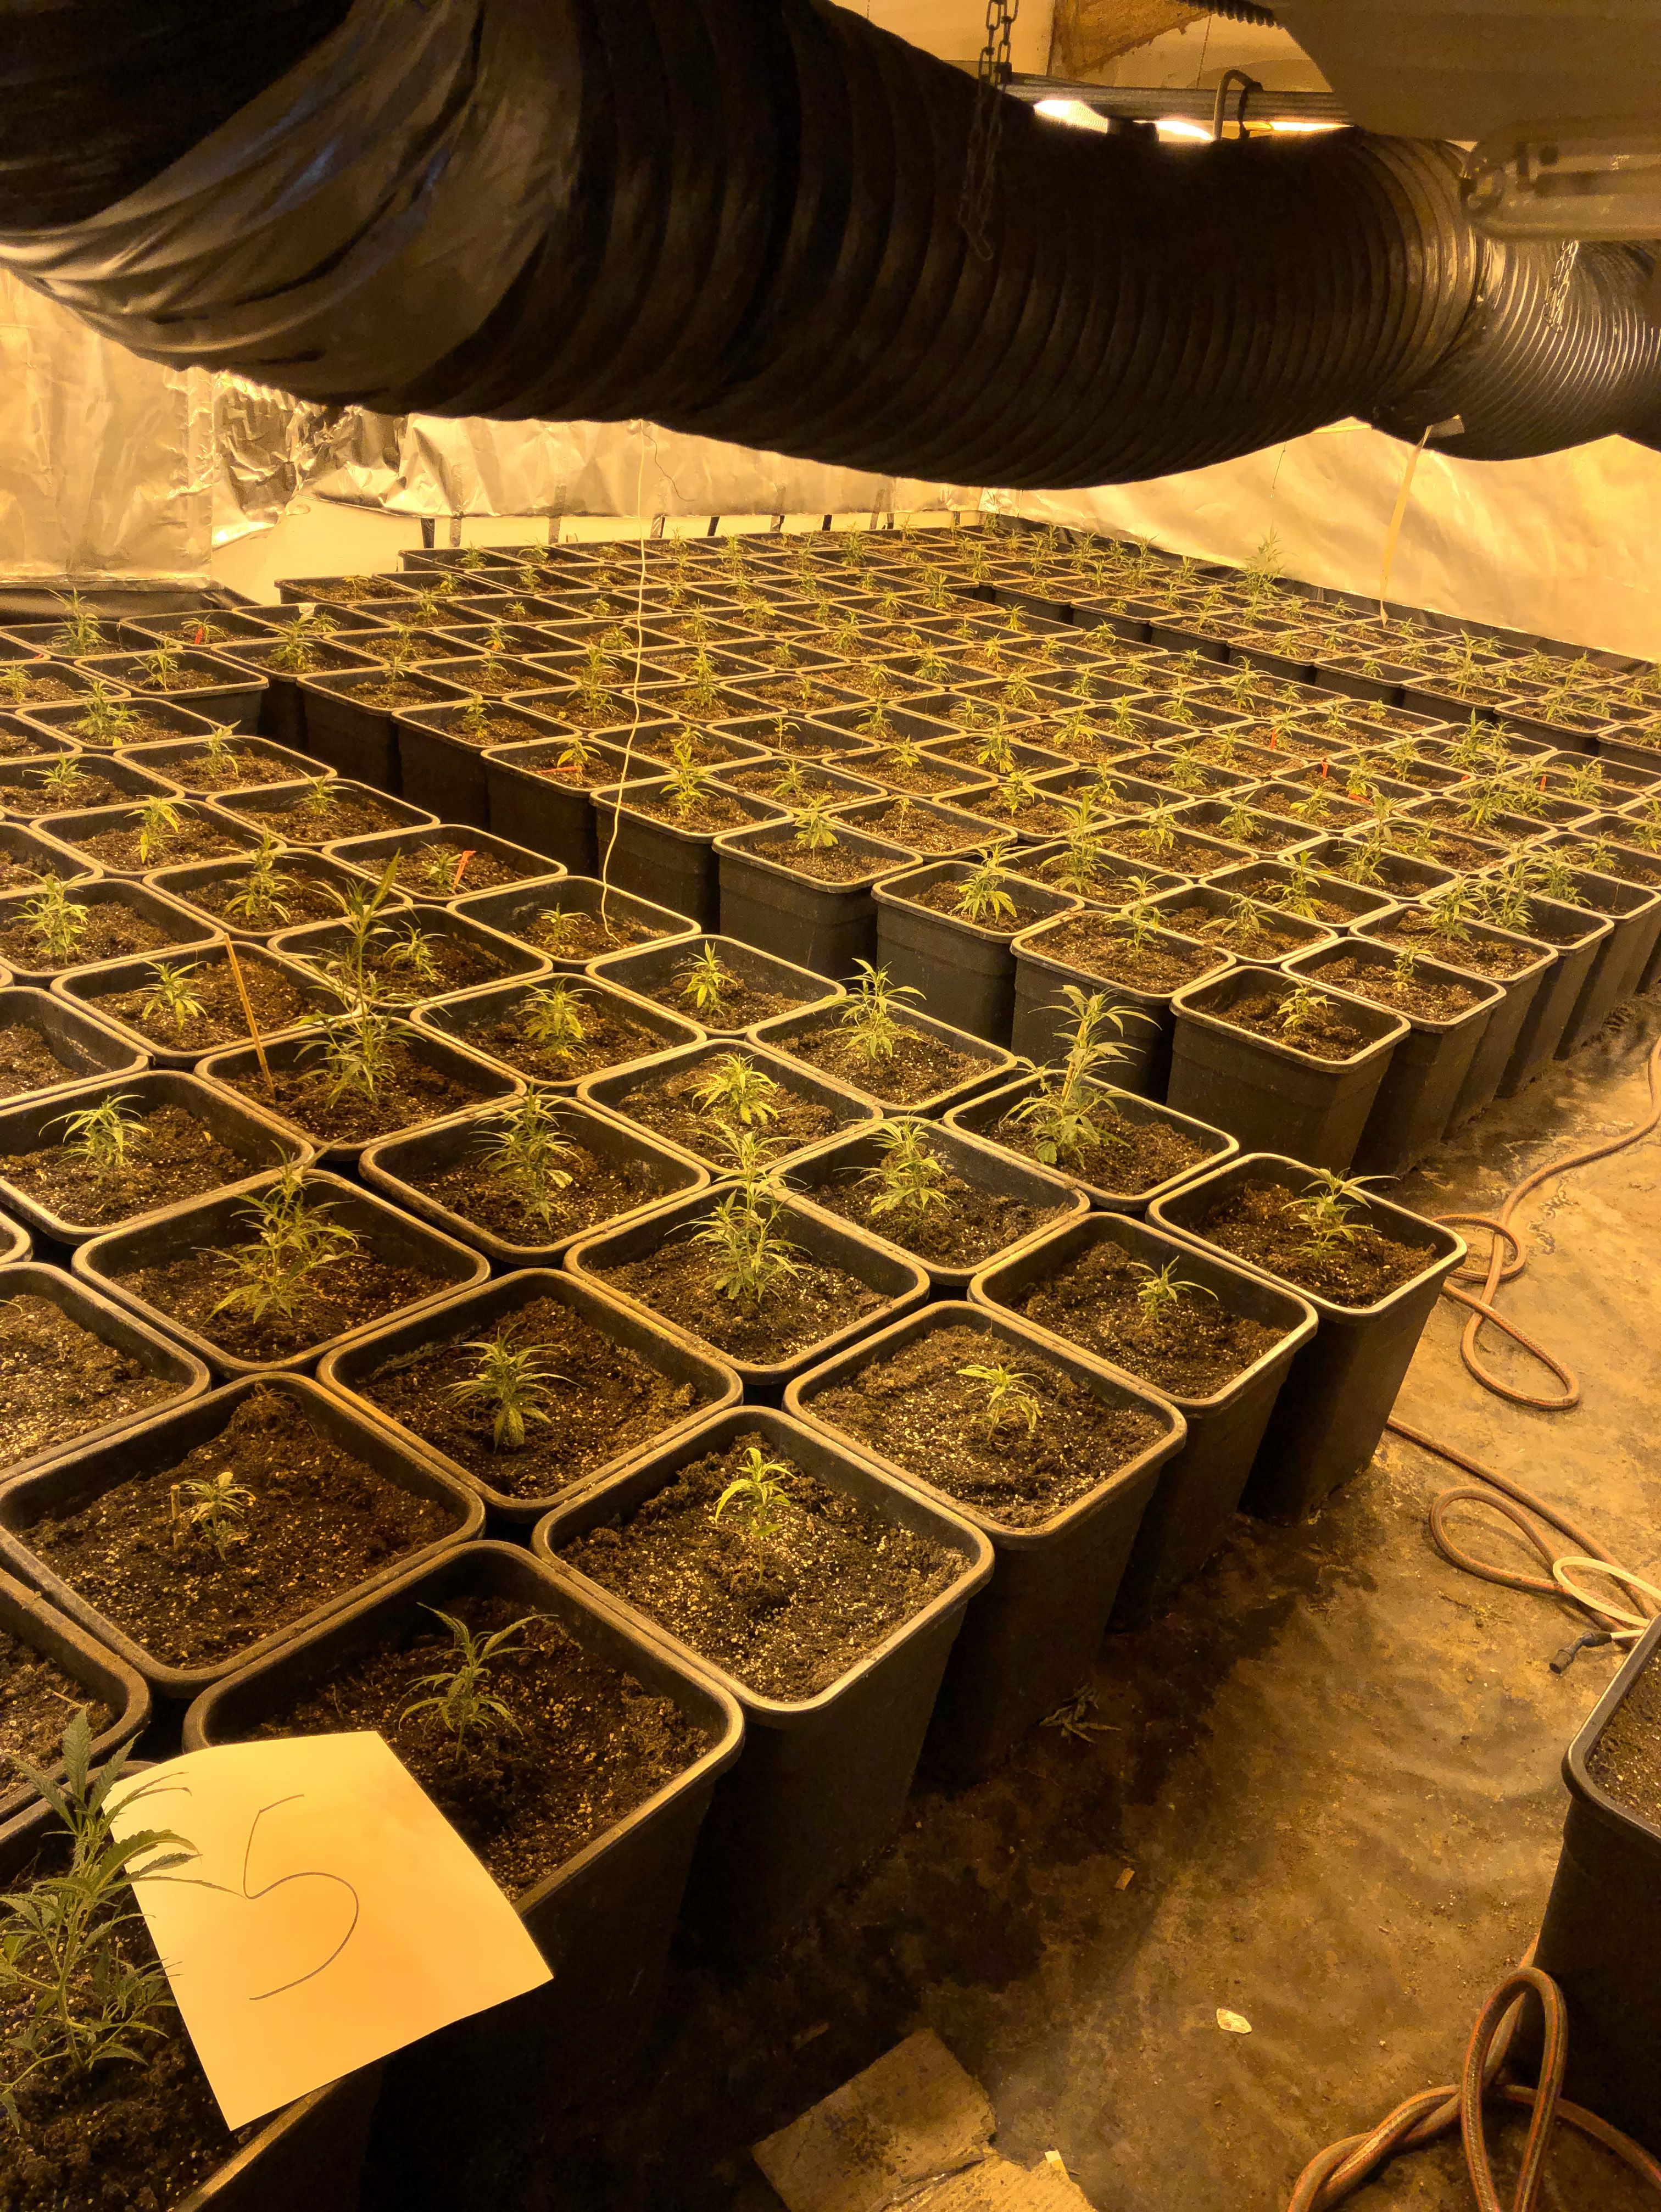 Die Polizei stellte insgesamt 697 Cannabis-Pflanzen in unterschiedlichen Wachstumsgrößen sicher © Kreispolizeibehörde Mettmann